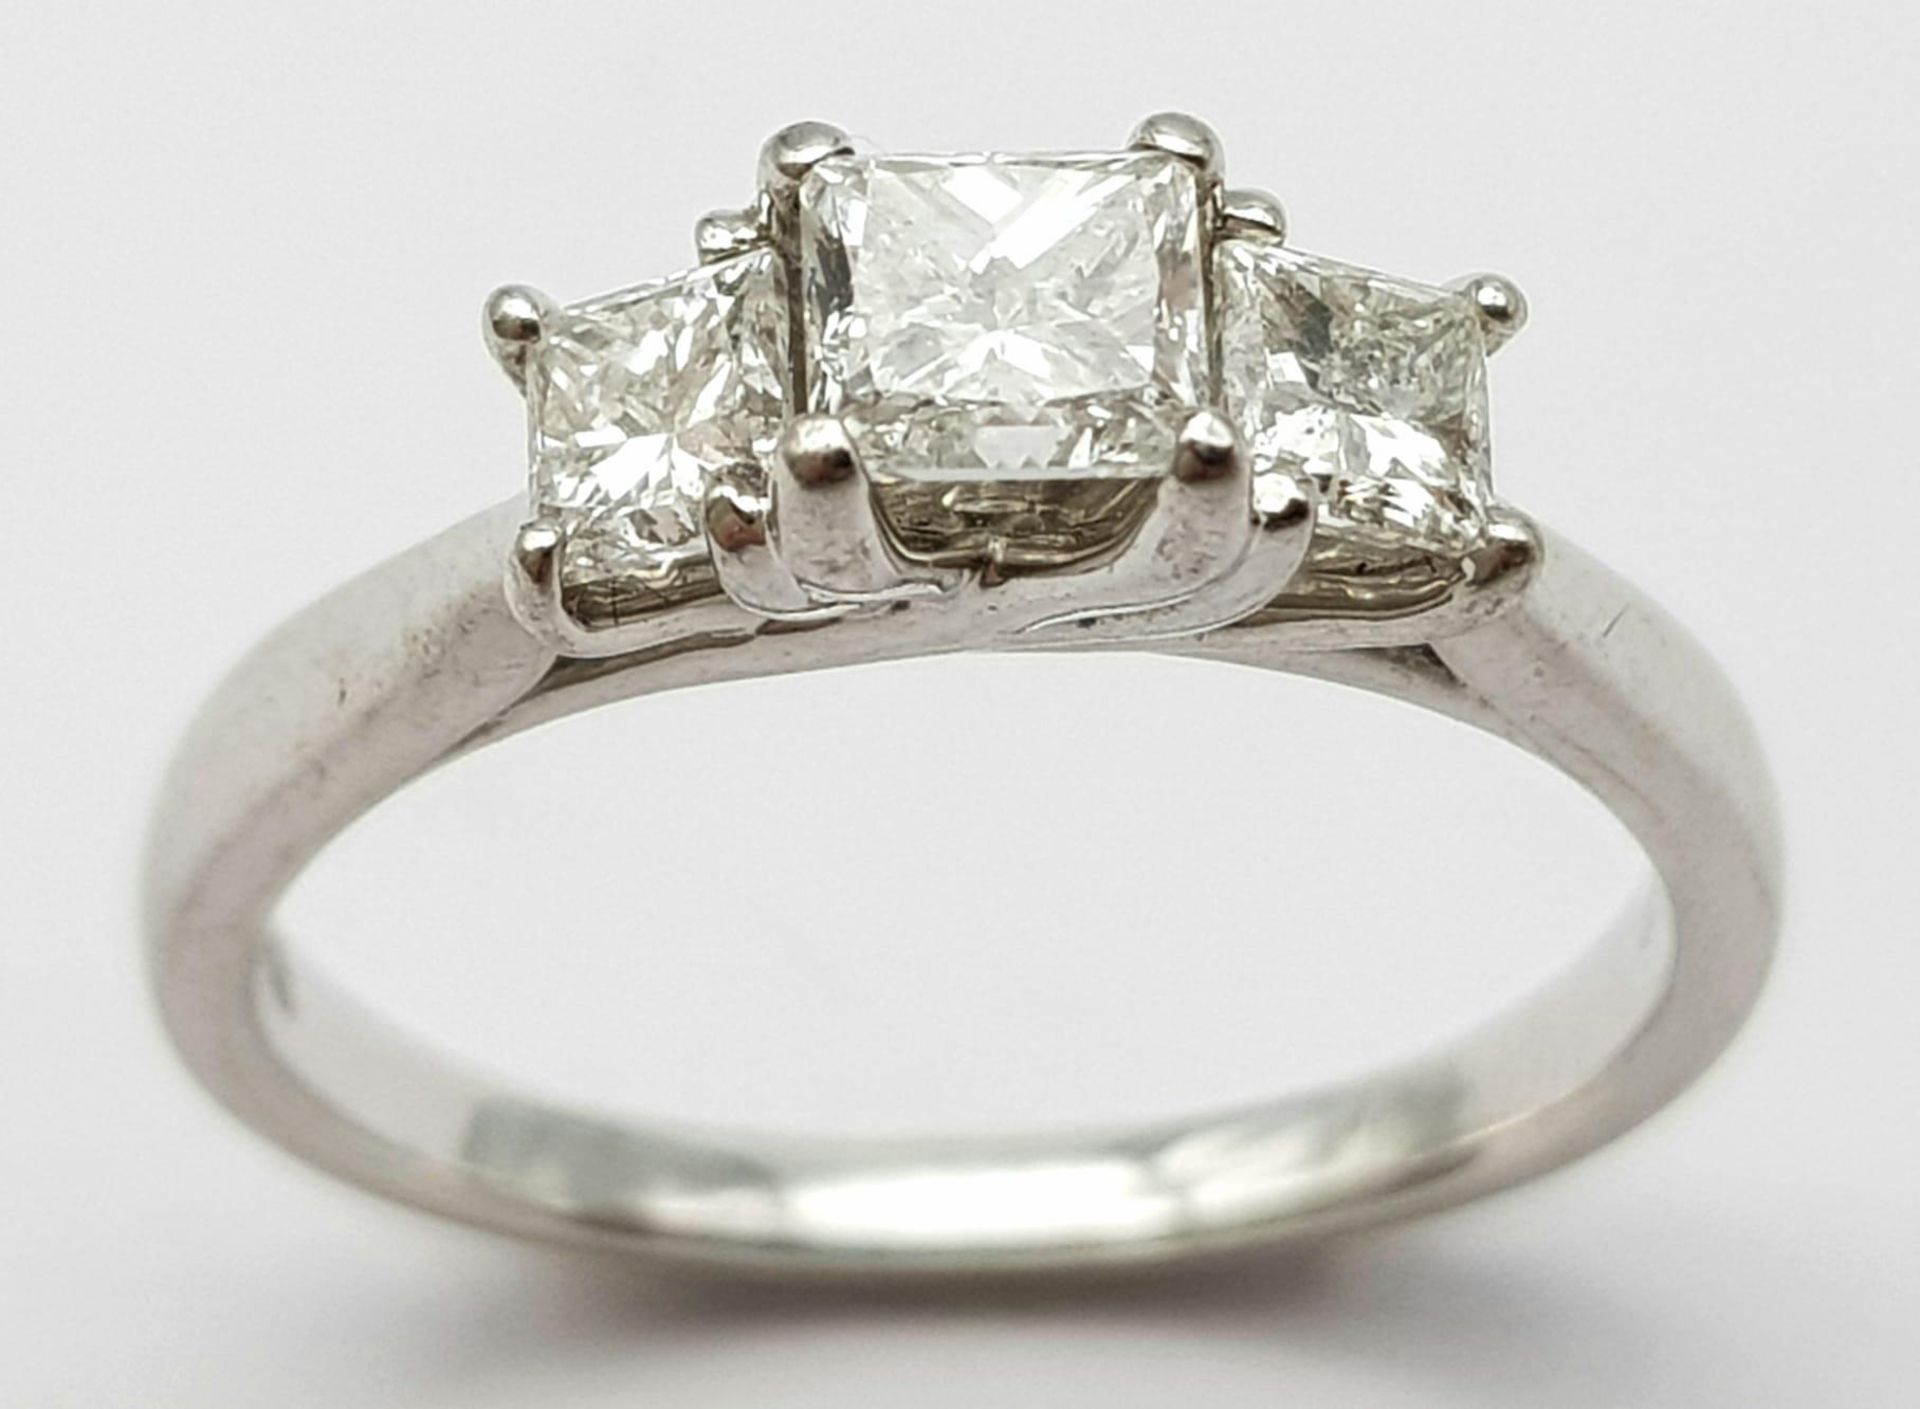 AN 18K WHITE GOLD TRILOGY PRINCESS CUT DIAMOND RING - 0.75CTW. 3.2G. SIZE K. - Bild 2 aus 6